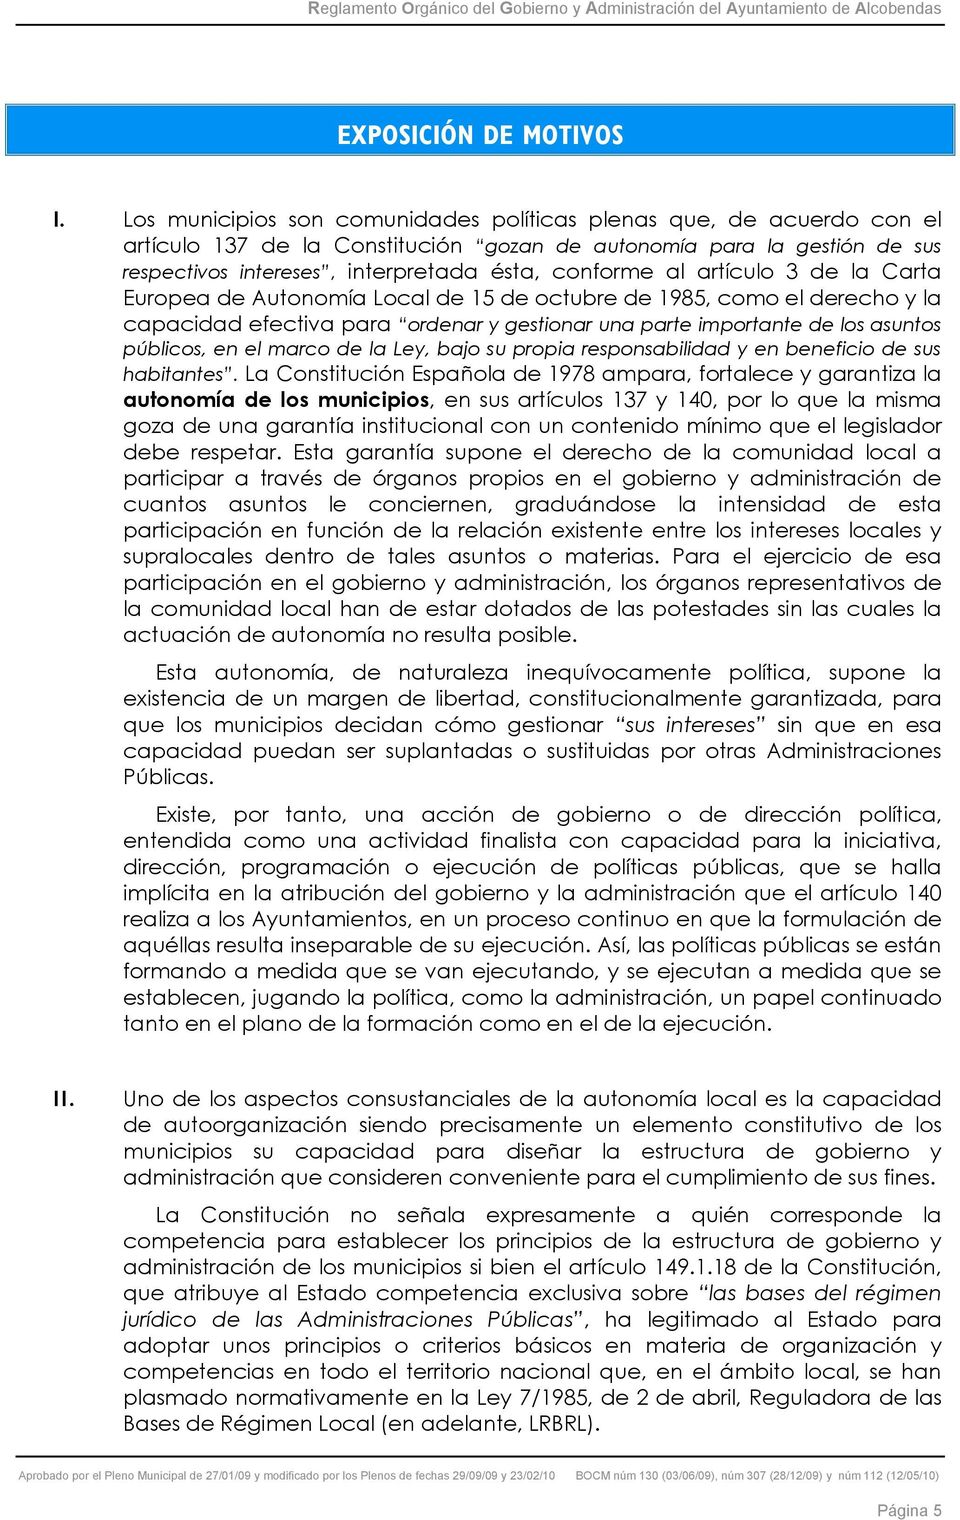 artículo 3 de la Carta Europea de Autonomía Local de 15 de octubre de 1985, como el derecho y la capacidad efectiva para ordenar y gestionar una parte importante de los asuntos públicos, en el marco